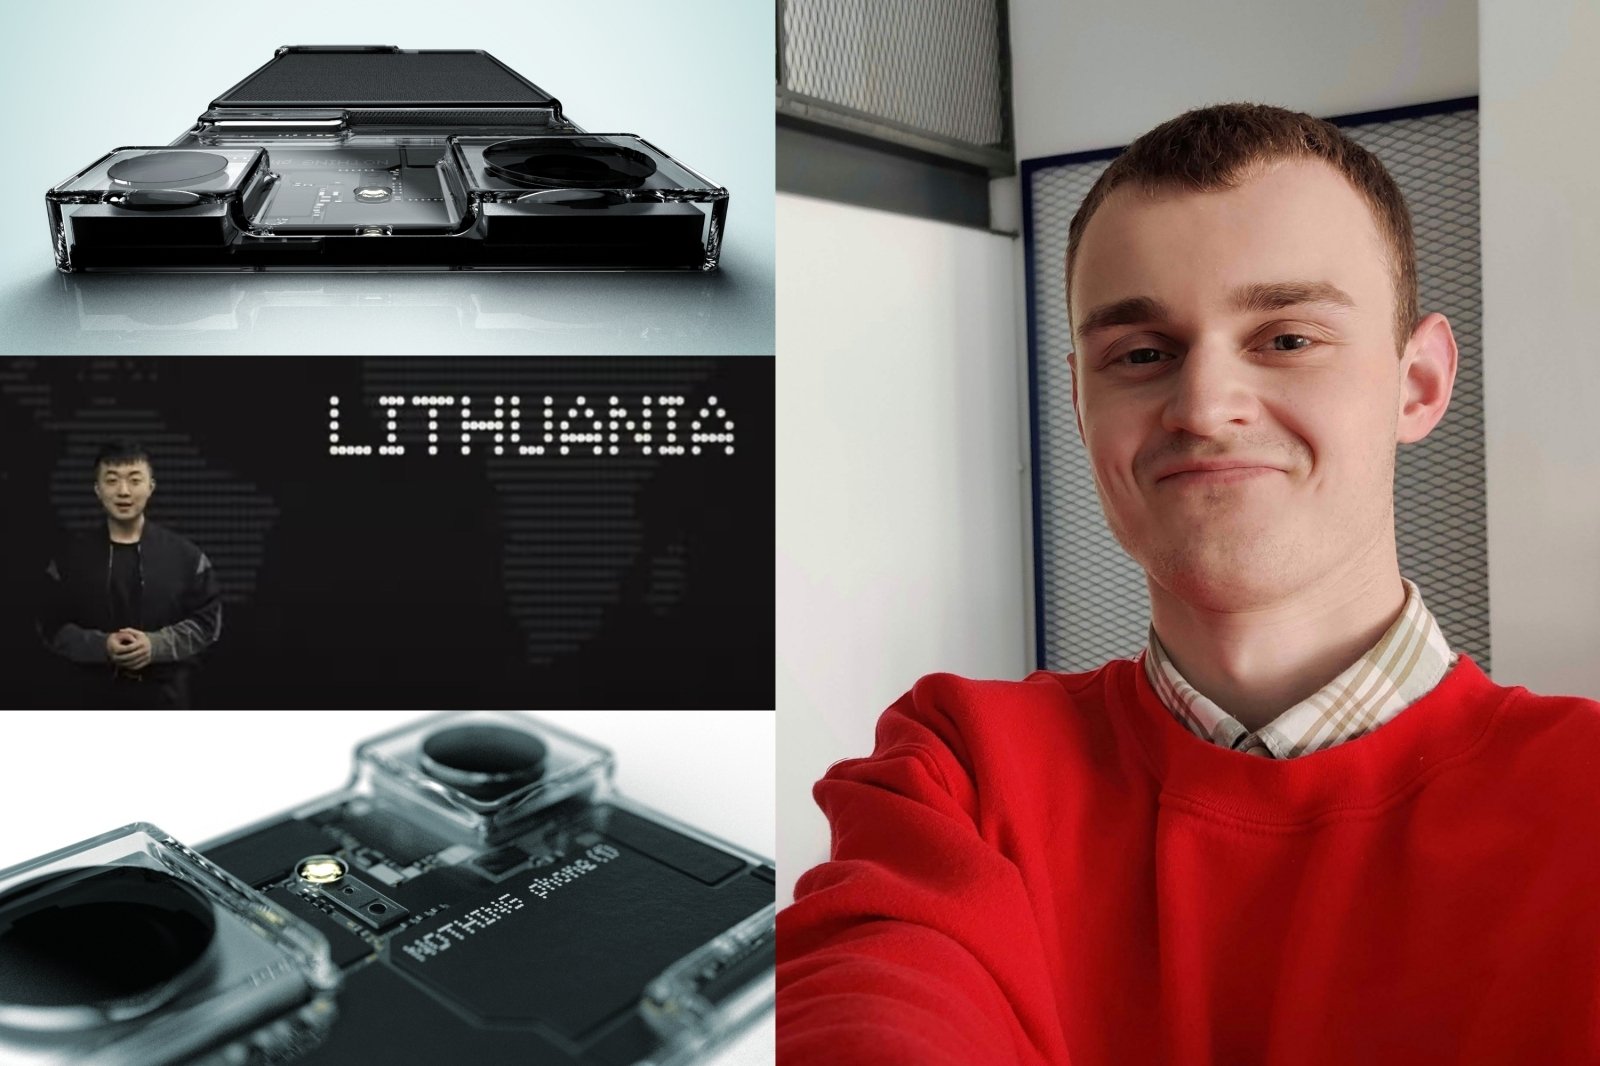 Litauiske studenters dristige idé har fått verdensomspennende anerkjennelse fra teknologiutviklere: det er den eneste måten for dem å se hvor tøff jeg er